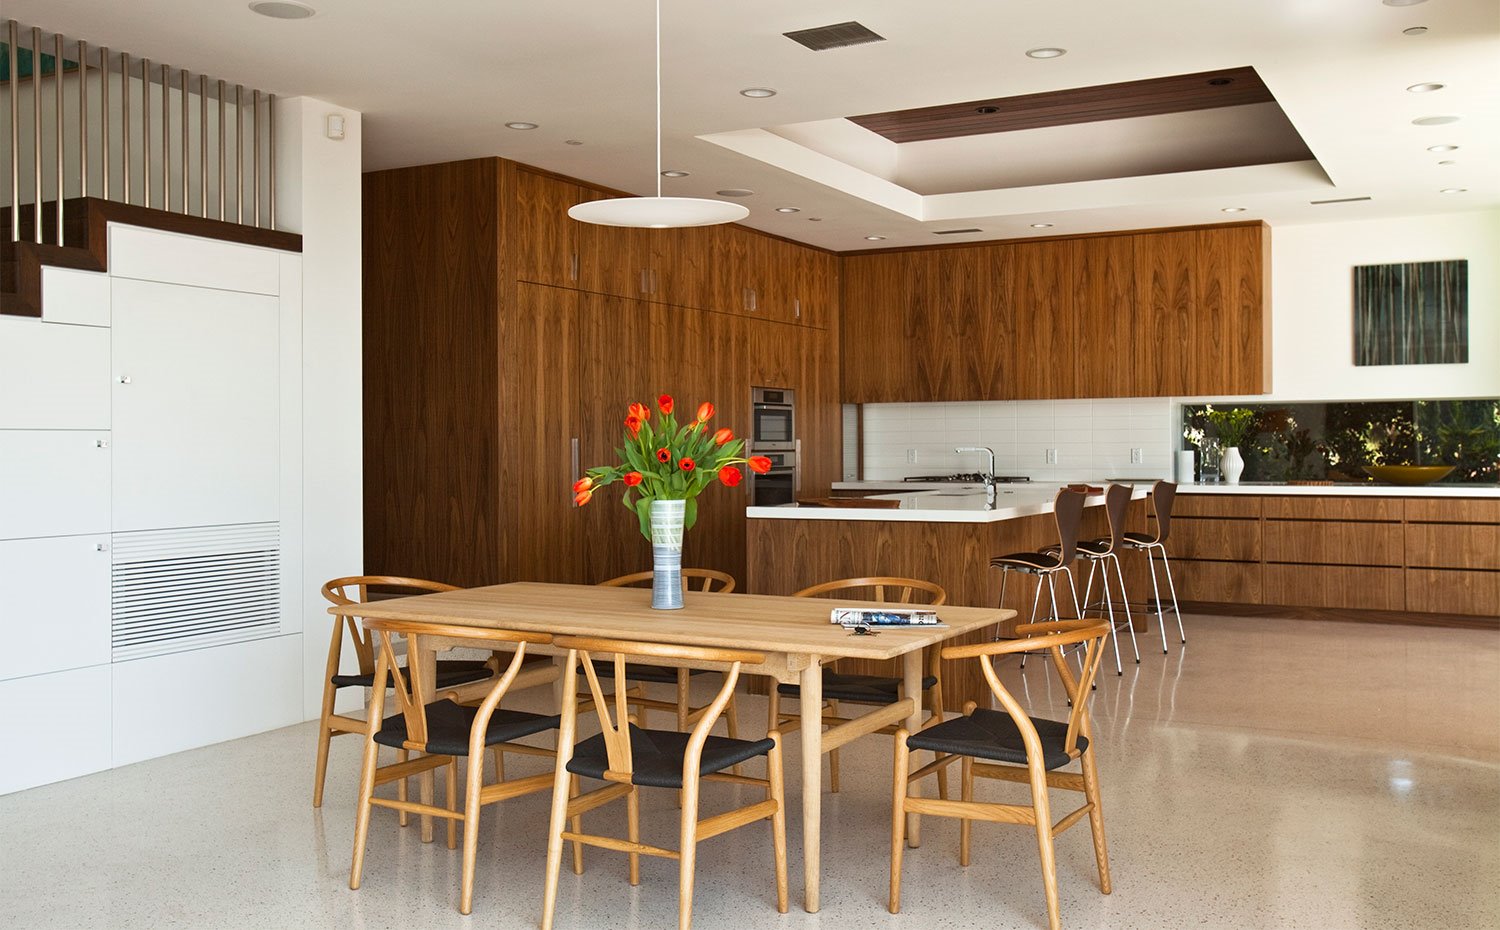 Cocina abierta con mobiliario de madera y mesa de comedor en madera natural con sillas a juego